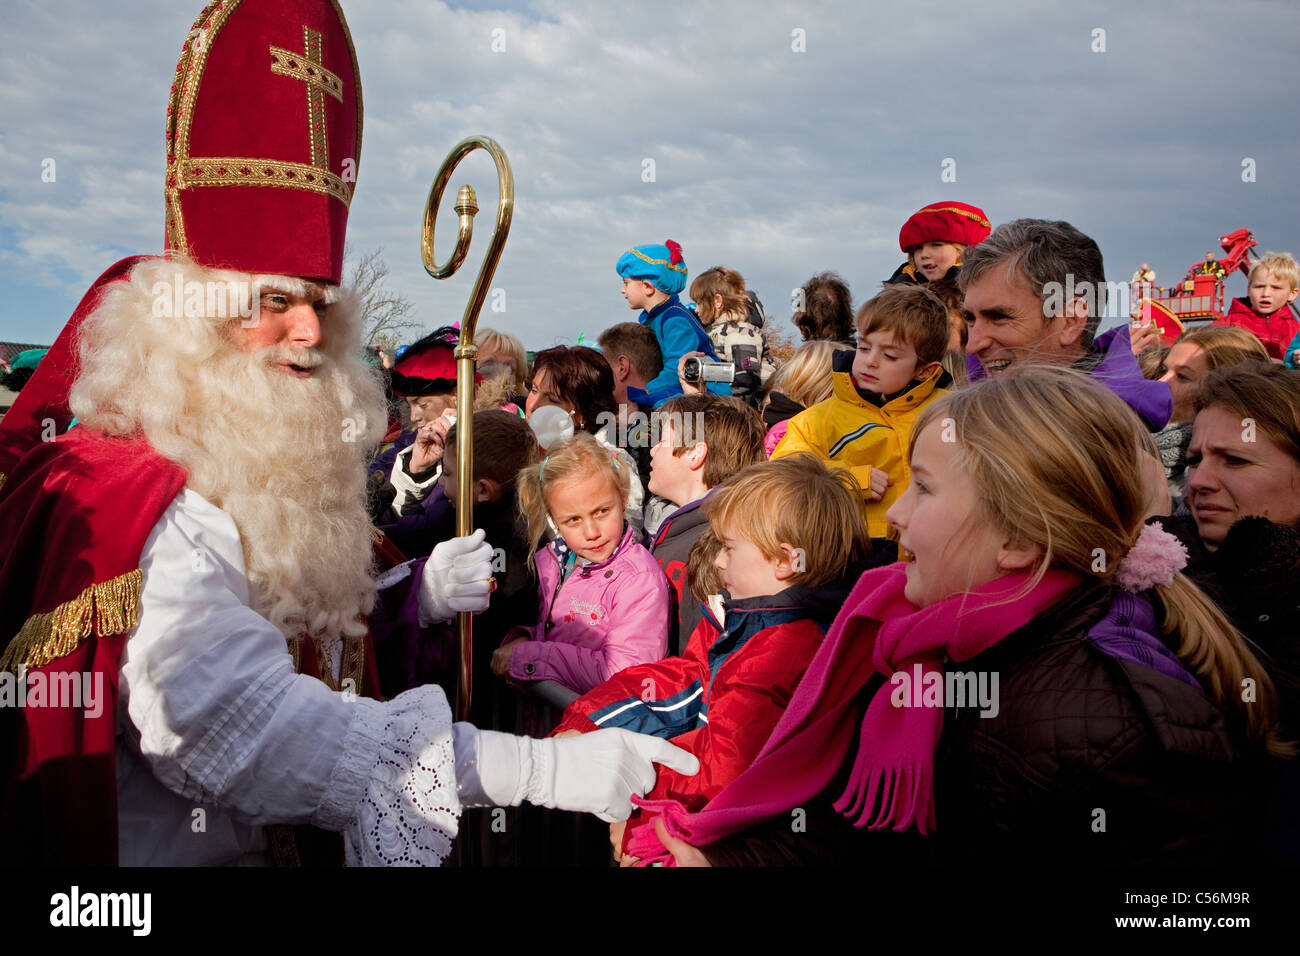 Den Niederlanden, Loosdrecht, Festival des Sinterklaas oder Sint Nicolaas, jährlich am Vorabend der Nikolaus am 5. Dezember gefeiert. Stockfoto